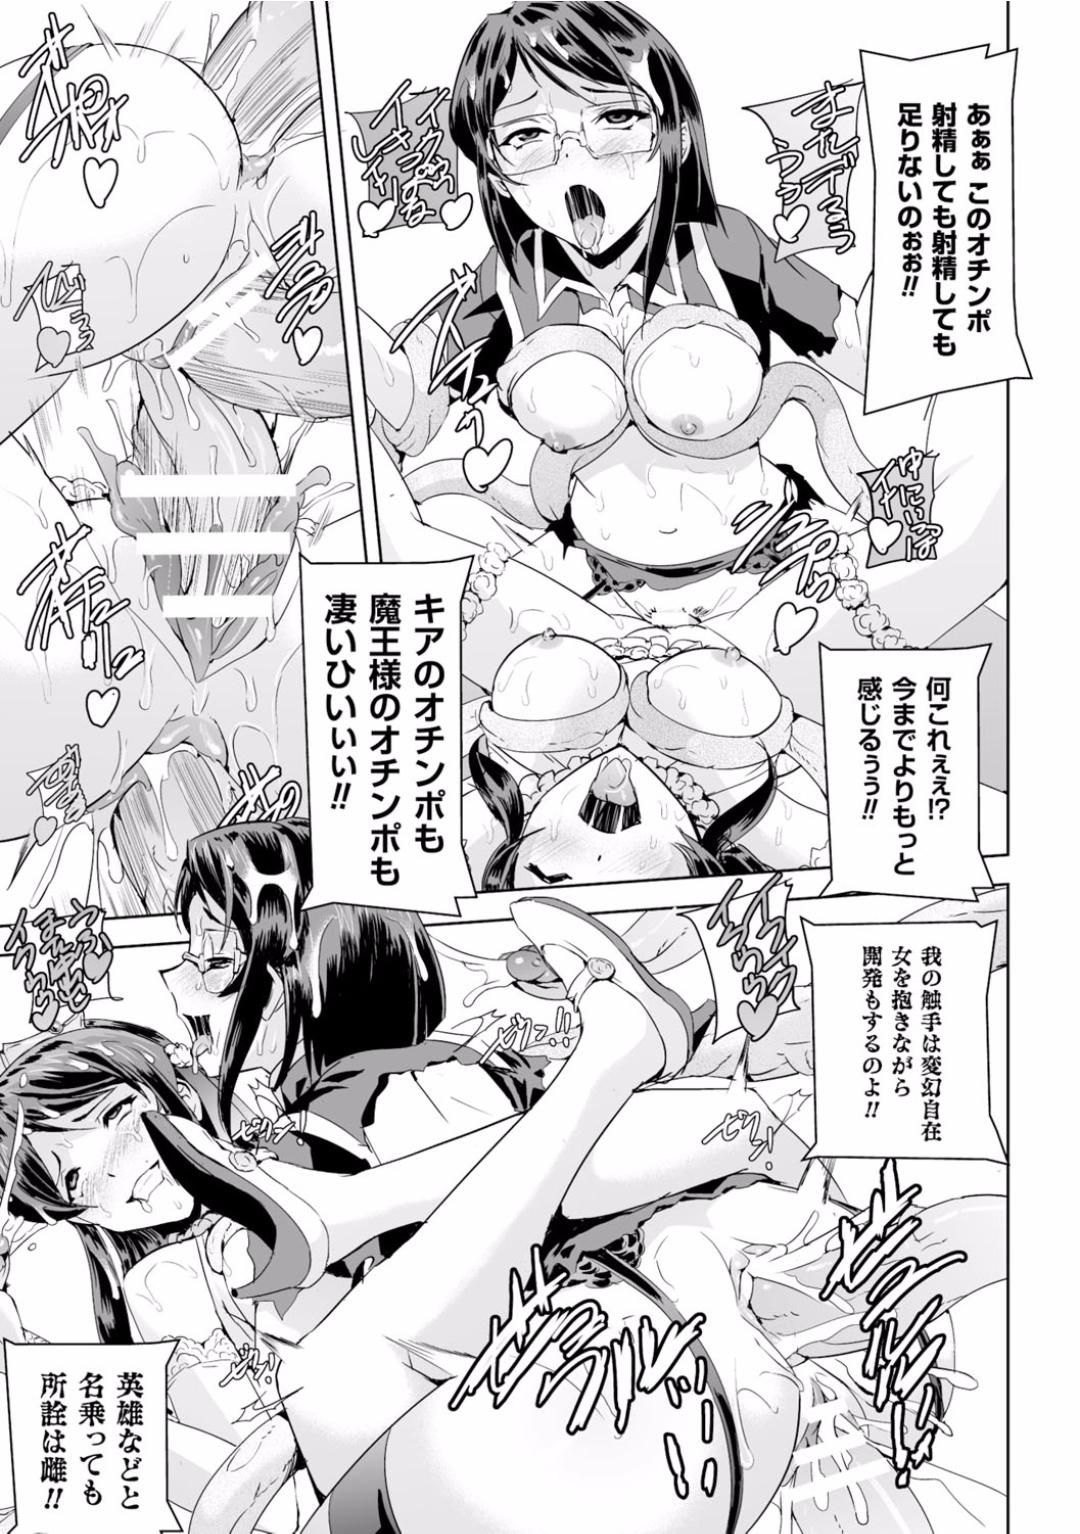 Seigi no Heroine Kangoku File Vol. 2 41